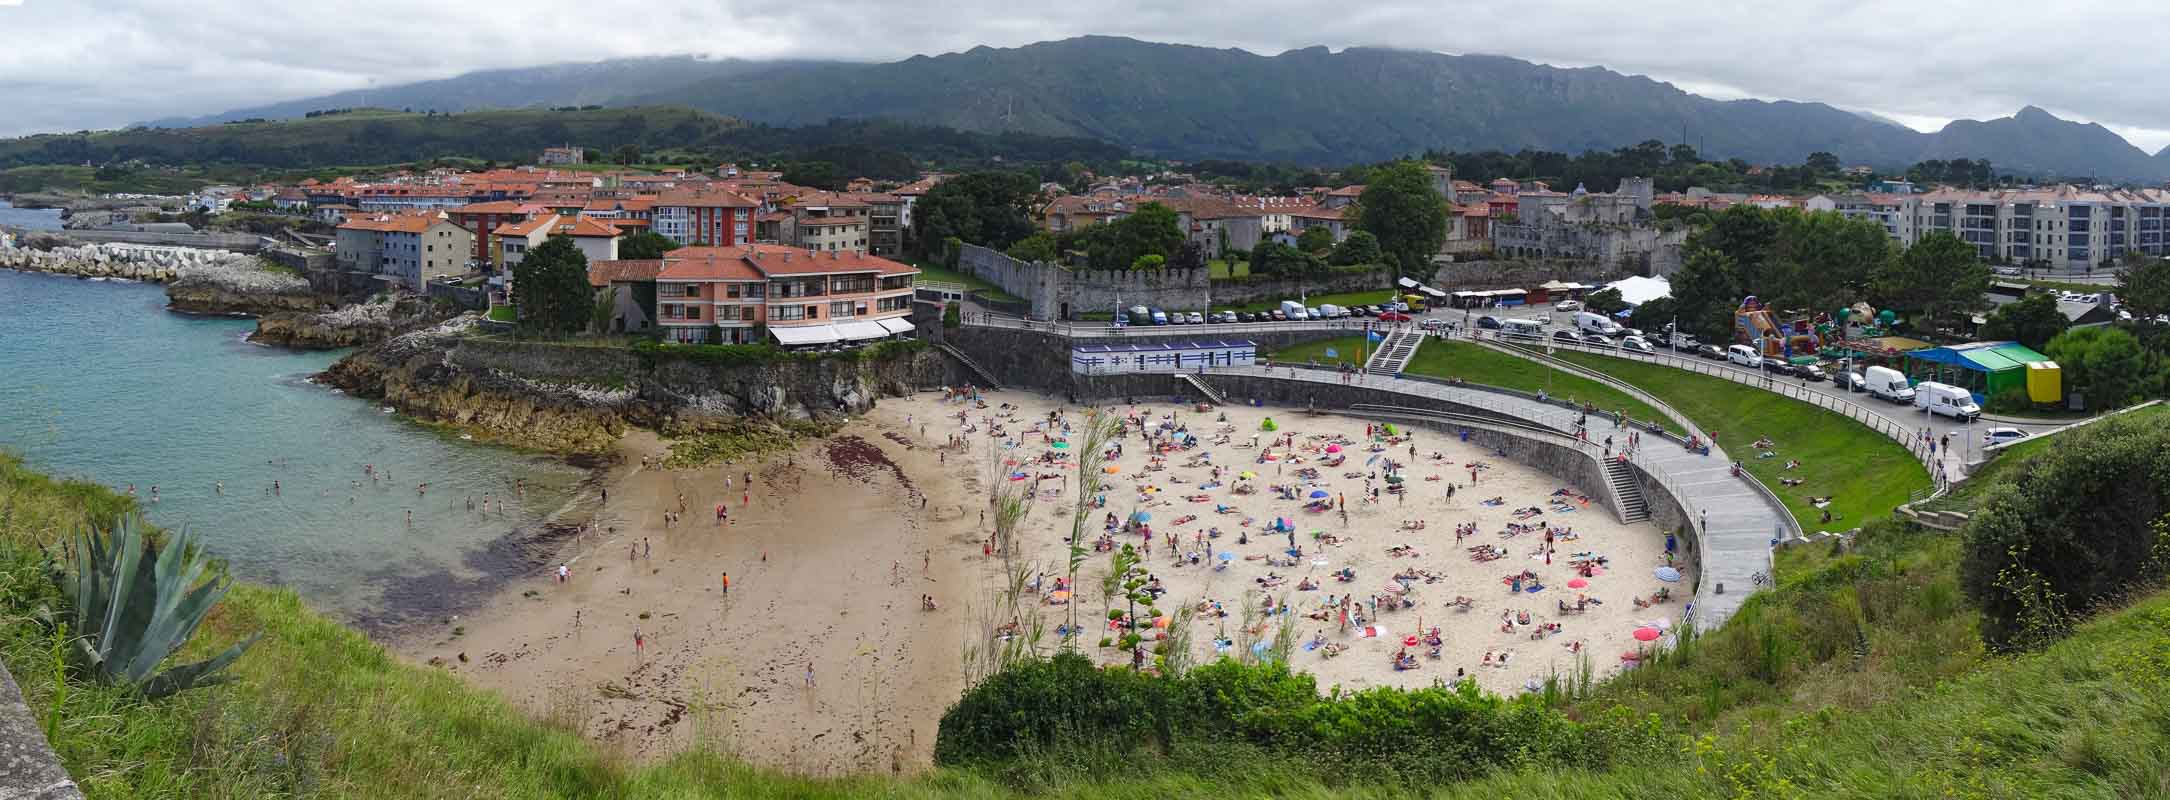 playa del sablon asturias